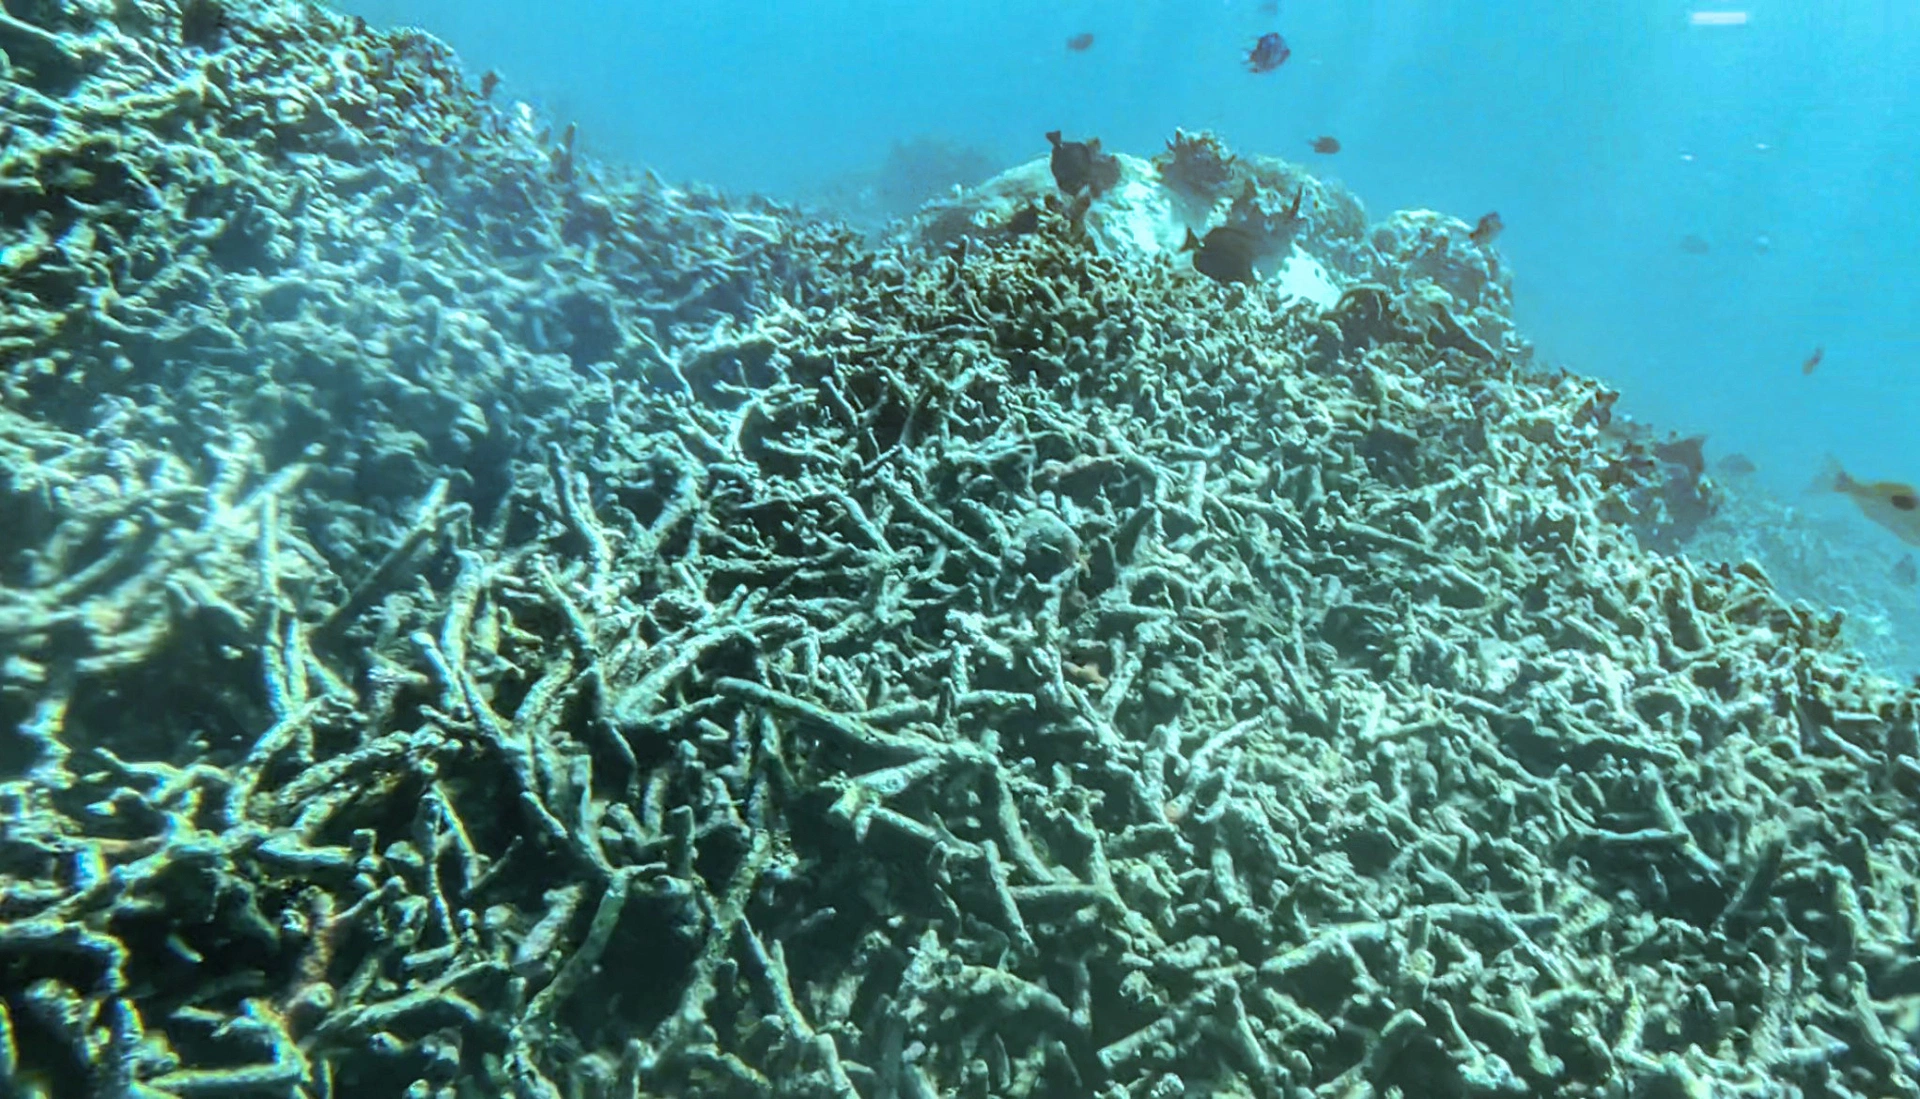 Tỉnh ủy Khánh Hòa yêu cầu làm rõ vụ san hô chết hàng loạt tại Hòn Mun